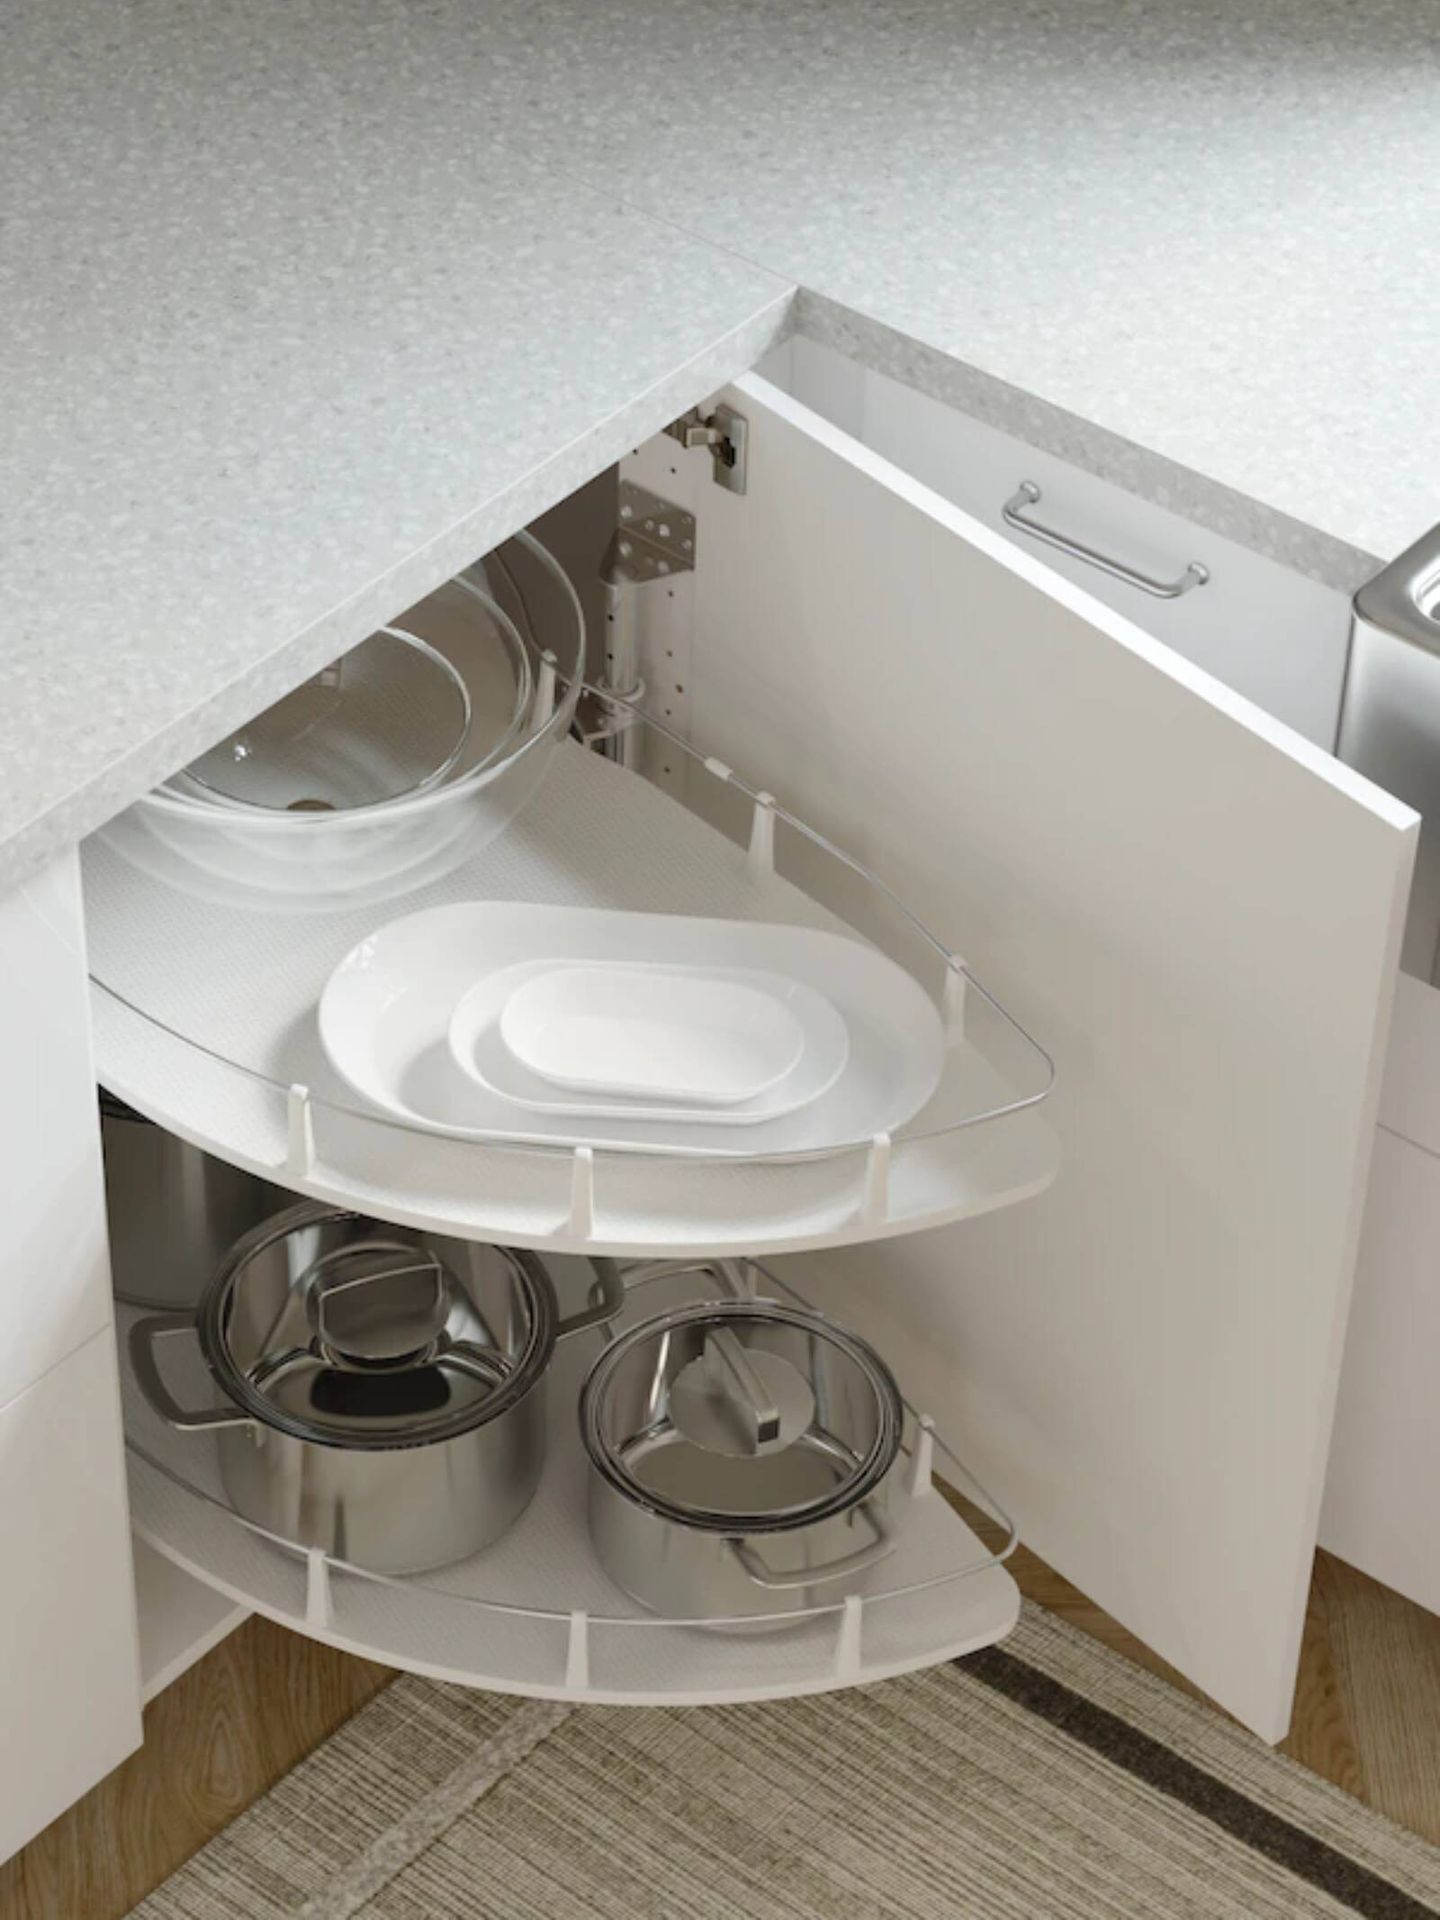 Inseguro No quiero estoy de acuerdo Las 5 nuevas ideas de Ikea para una cocina ordenada